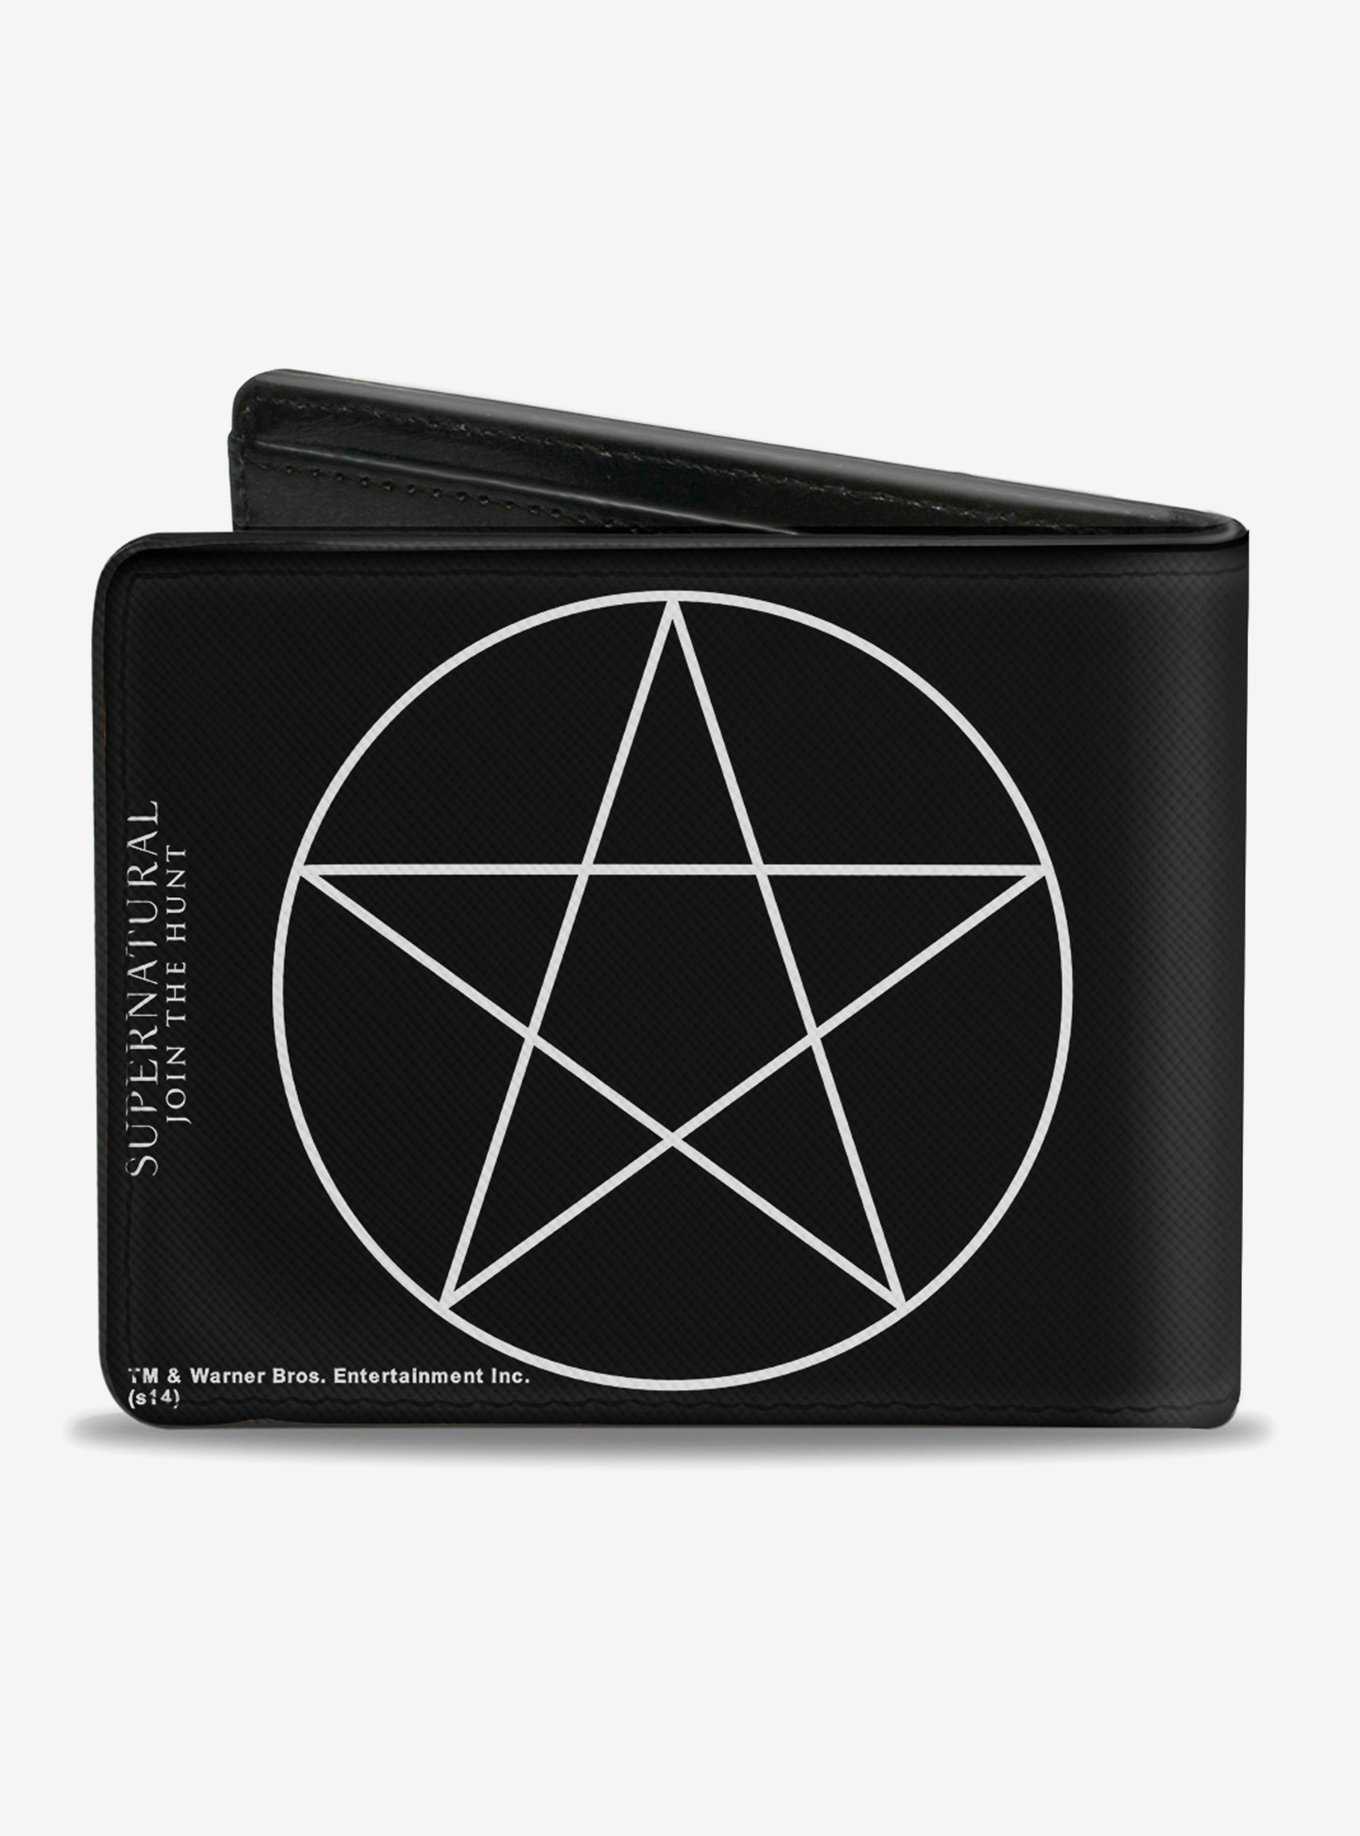 Supernatural Pentagram Bi-Fold Wallet, , hi-res